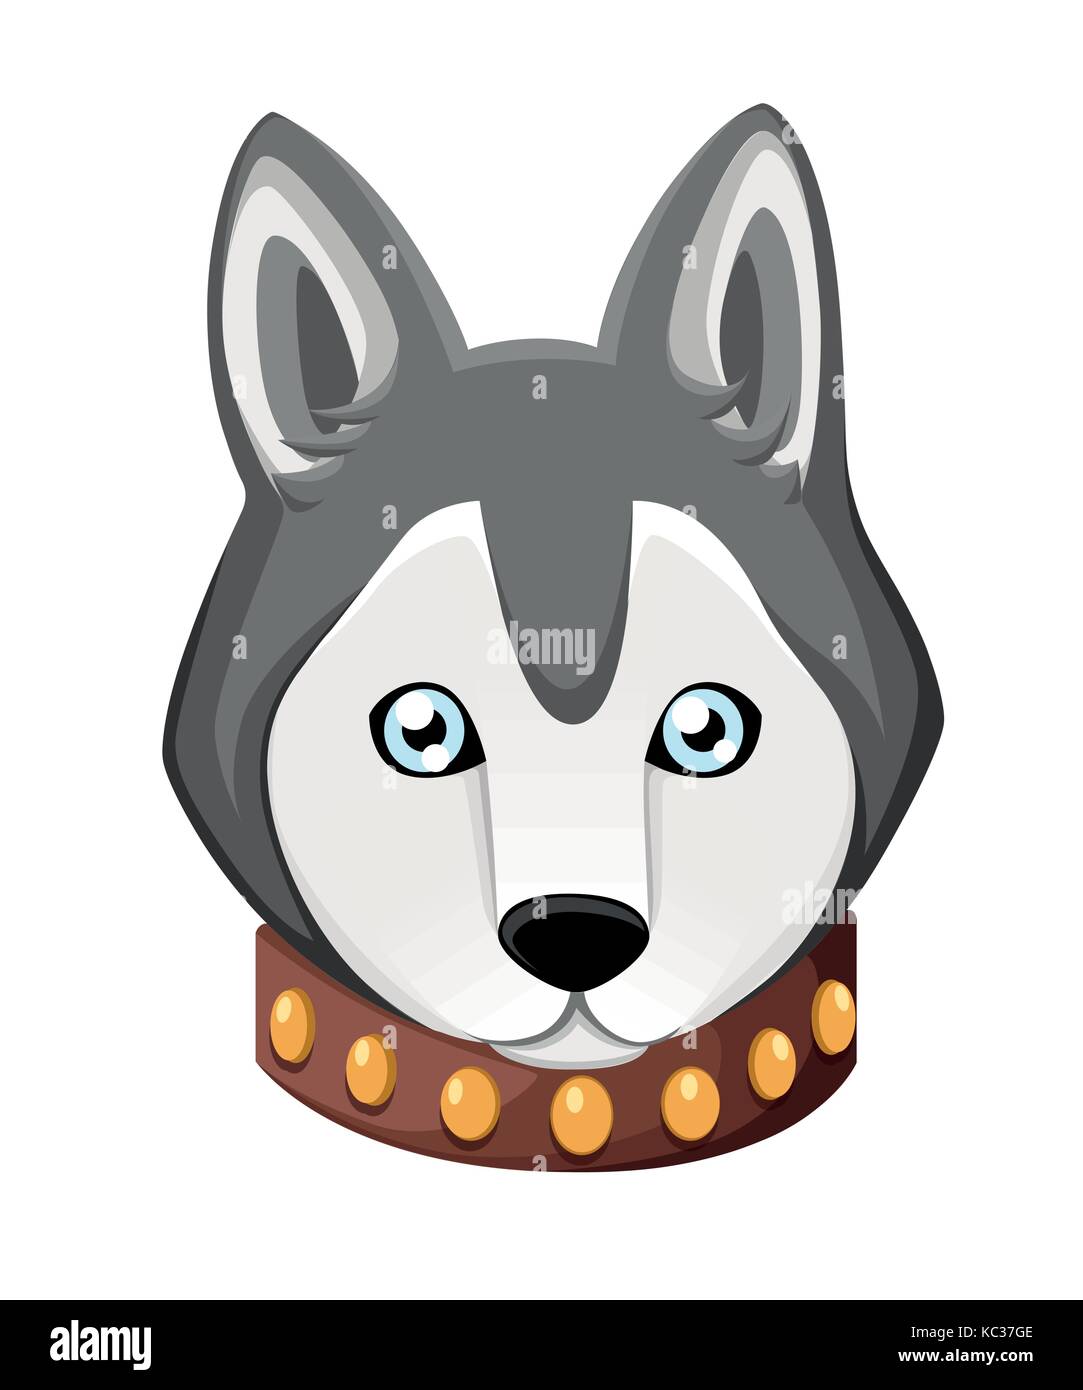 Blanc et gris, chien husky de Sibérie adultes aux yeux bleus . face de chien. Joli chiot pour carte de vœux, pet shop ou cliniques vétérinaires. page du site web et Illustration de Vecteur